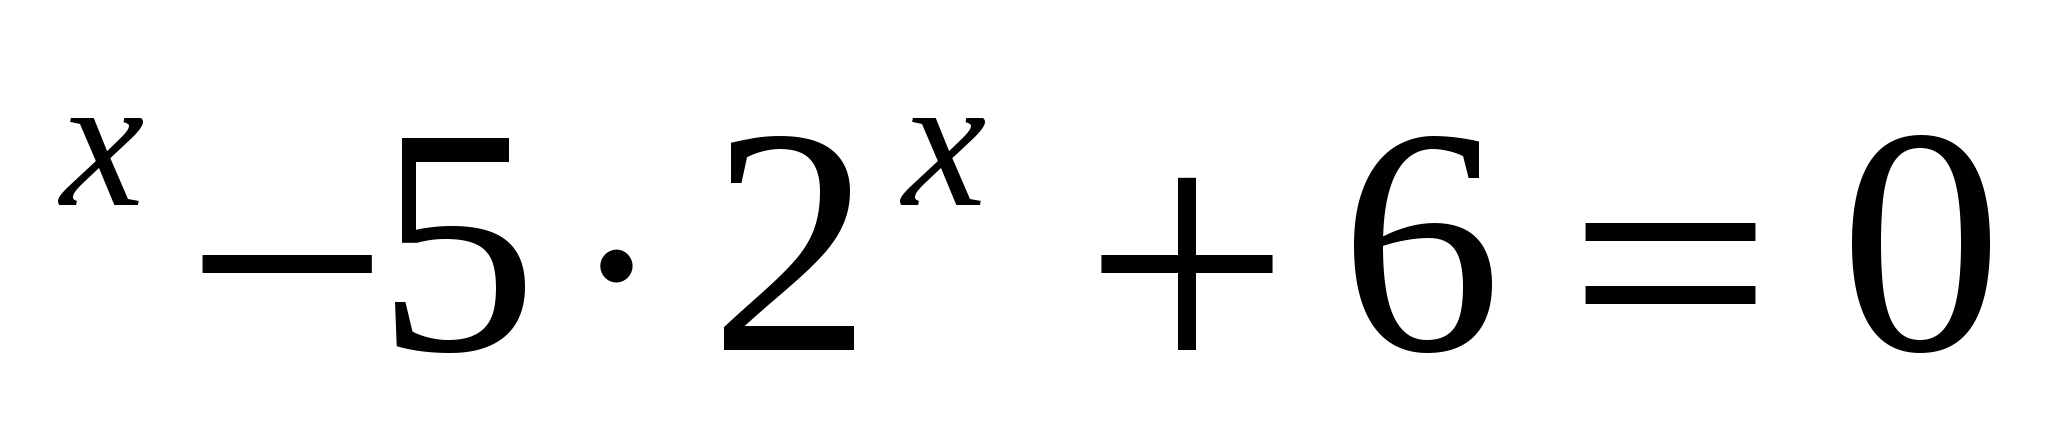 Открытый урок Решение показательных уравнений (11 класс)